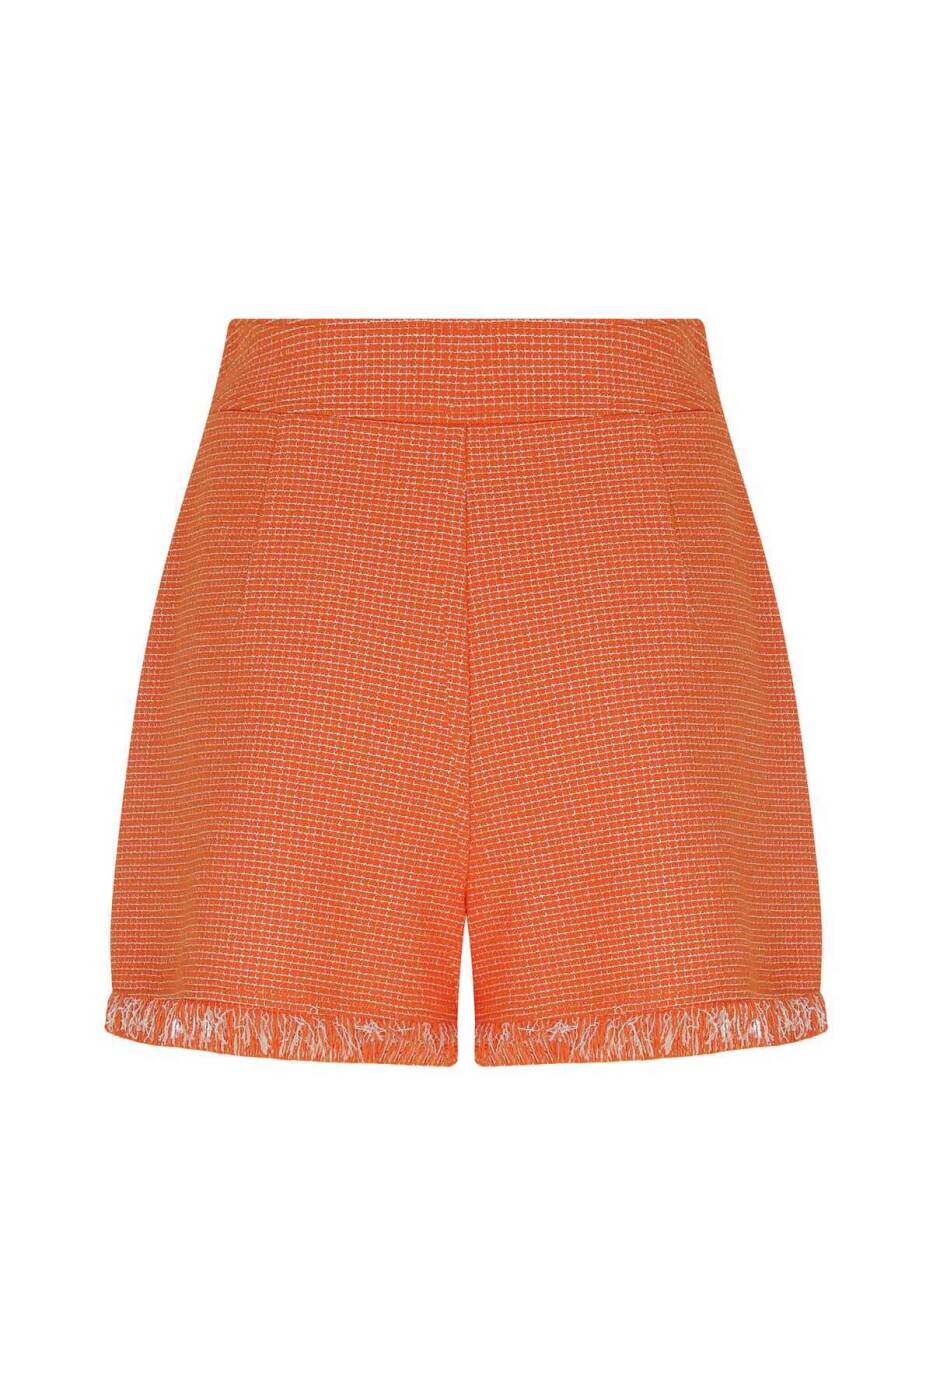 Buttoned Tasseled Women's Shorts Original